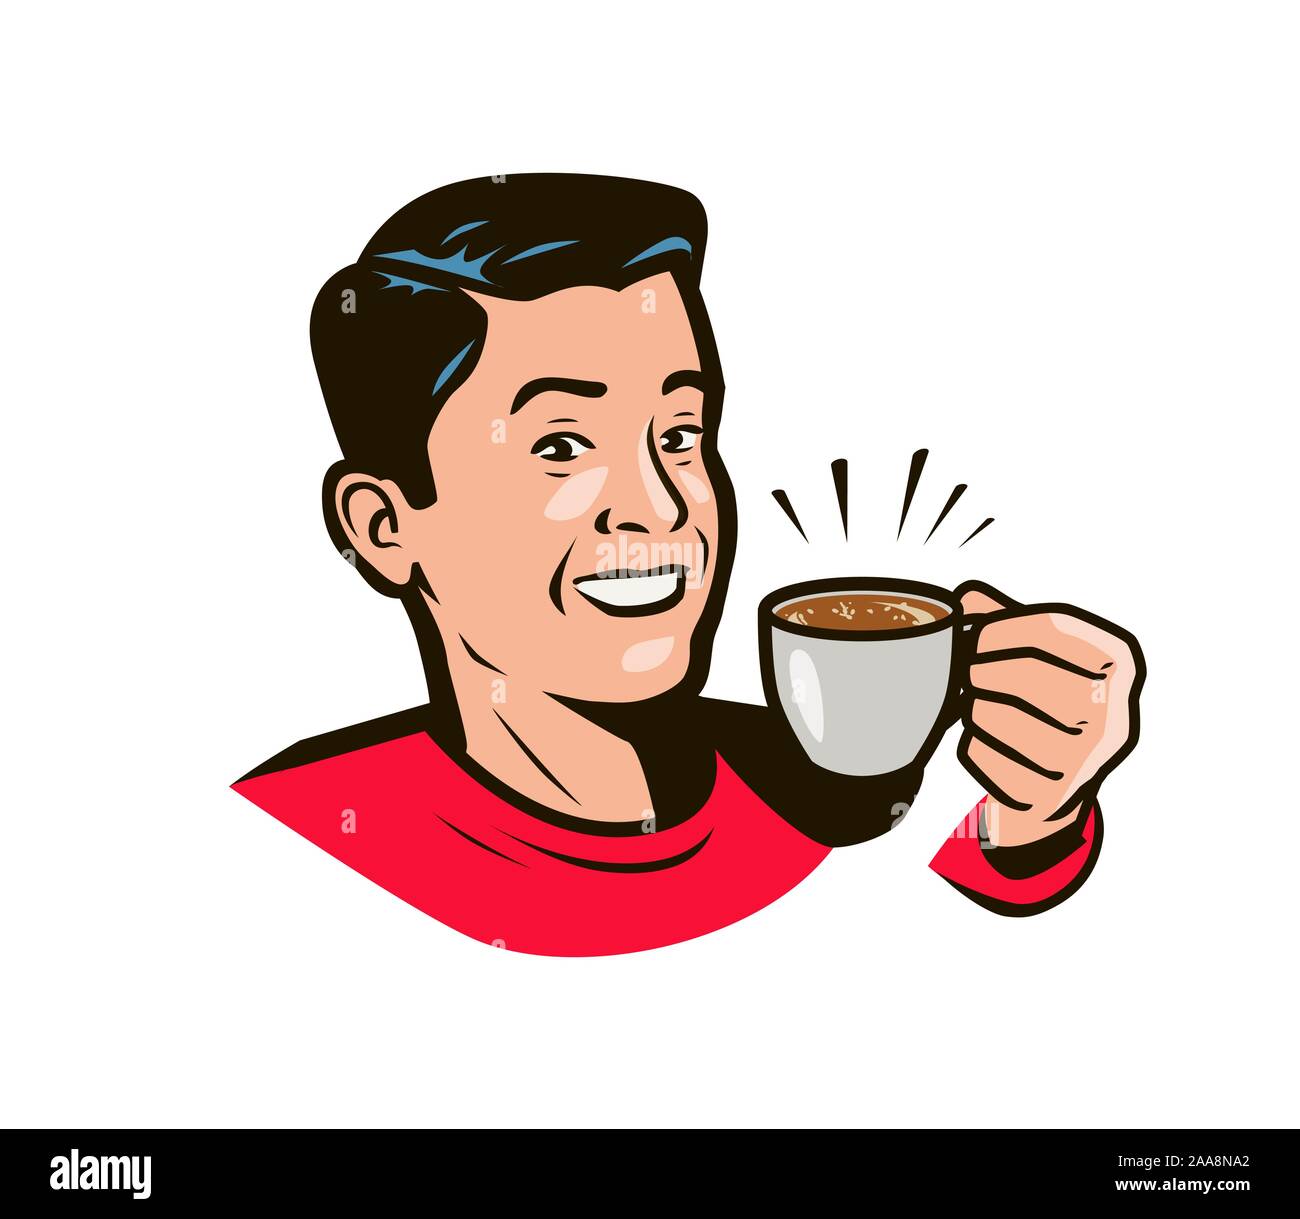 Glücklicher Mann mit einer Tasse Kaffee in der Hand. Getränke im Pop-Art-Stil. Vektorgrafik Stock Vektor